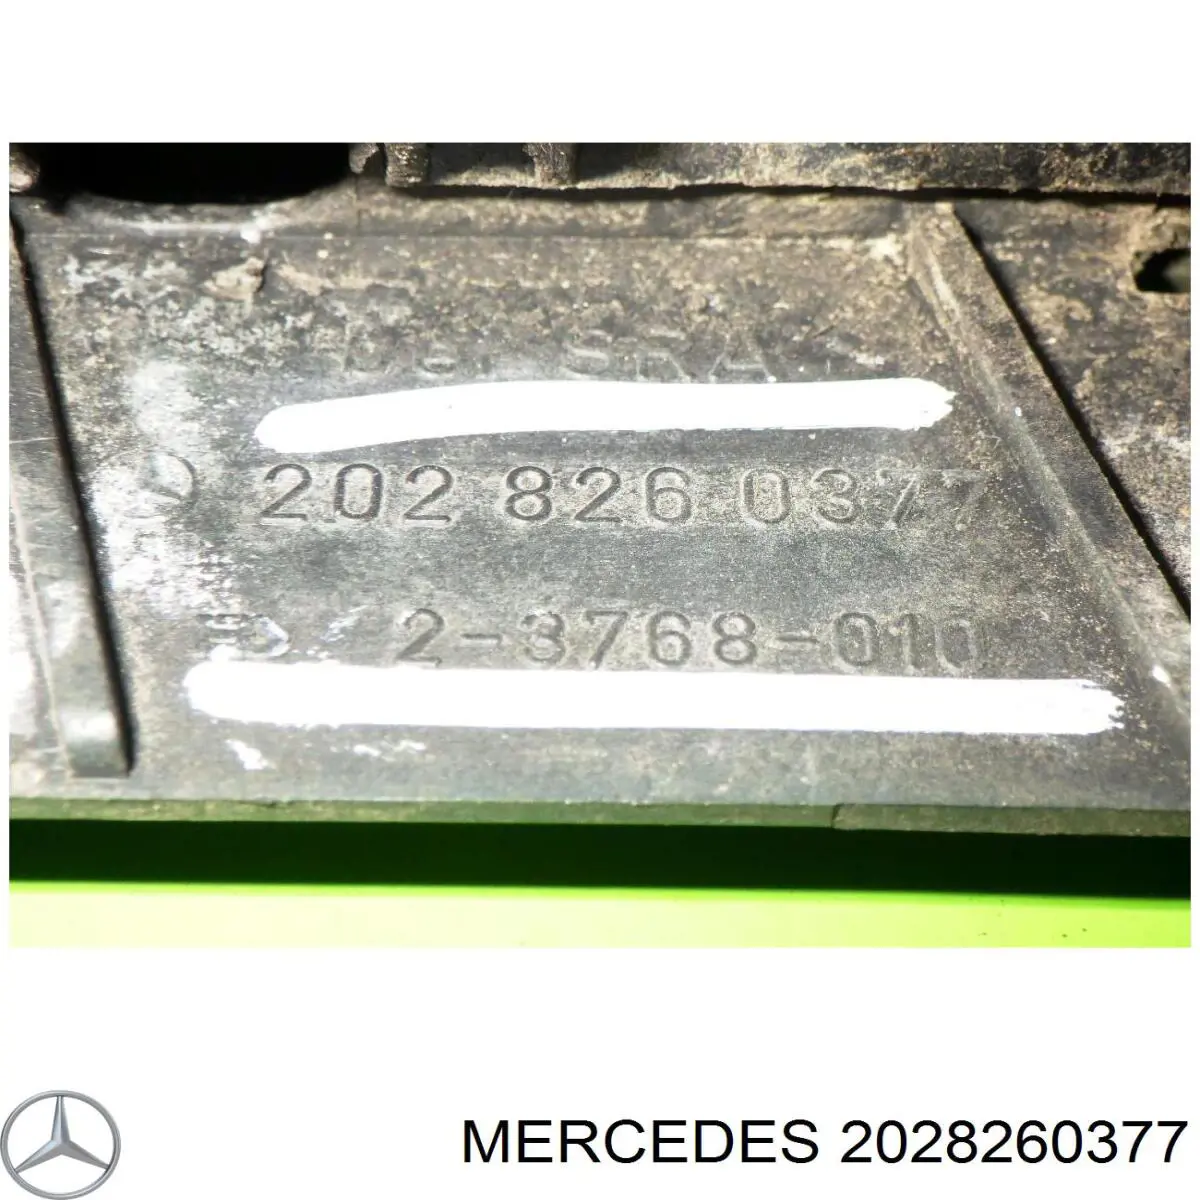 2028260377 Mercedes listón del faro izquierdo